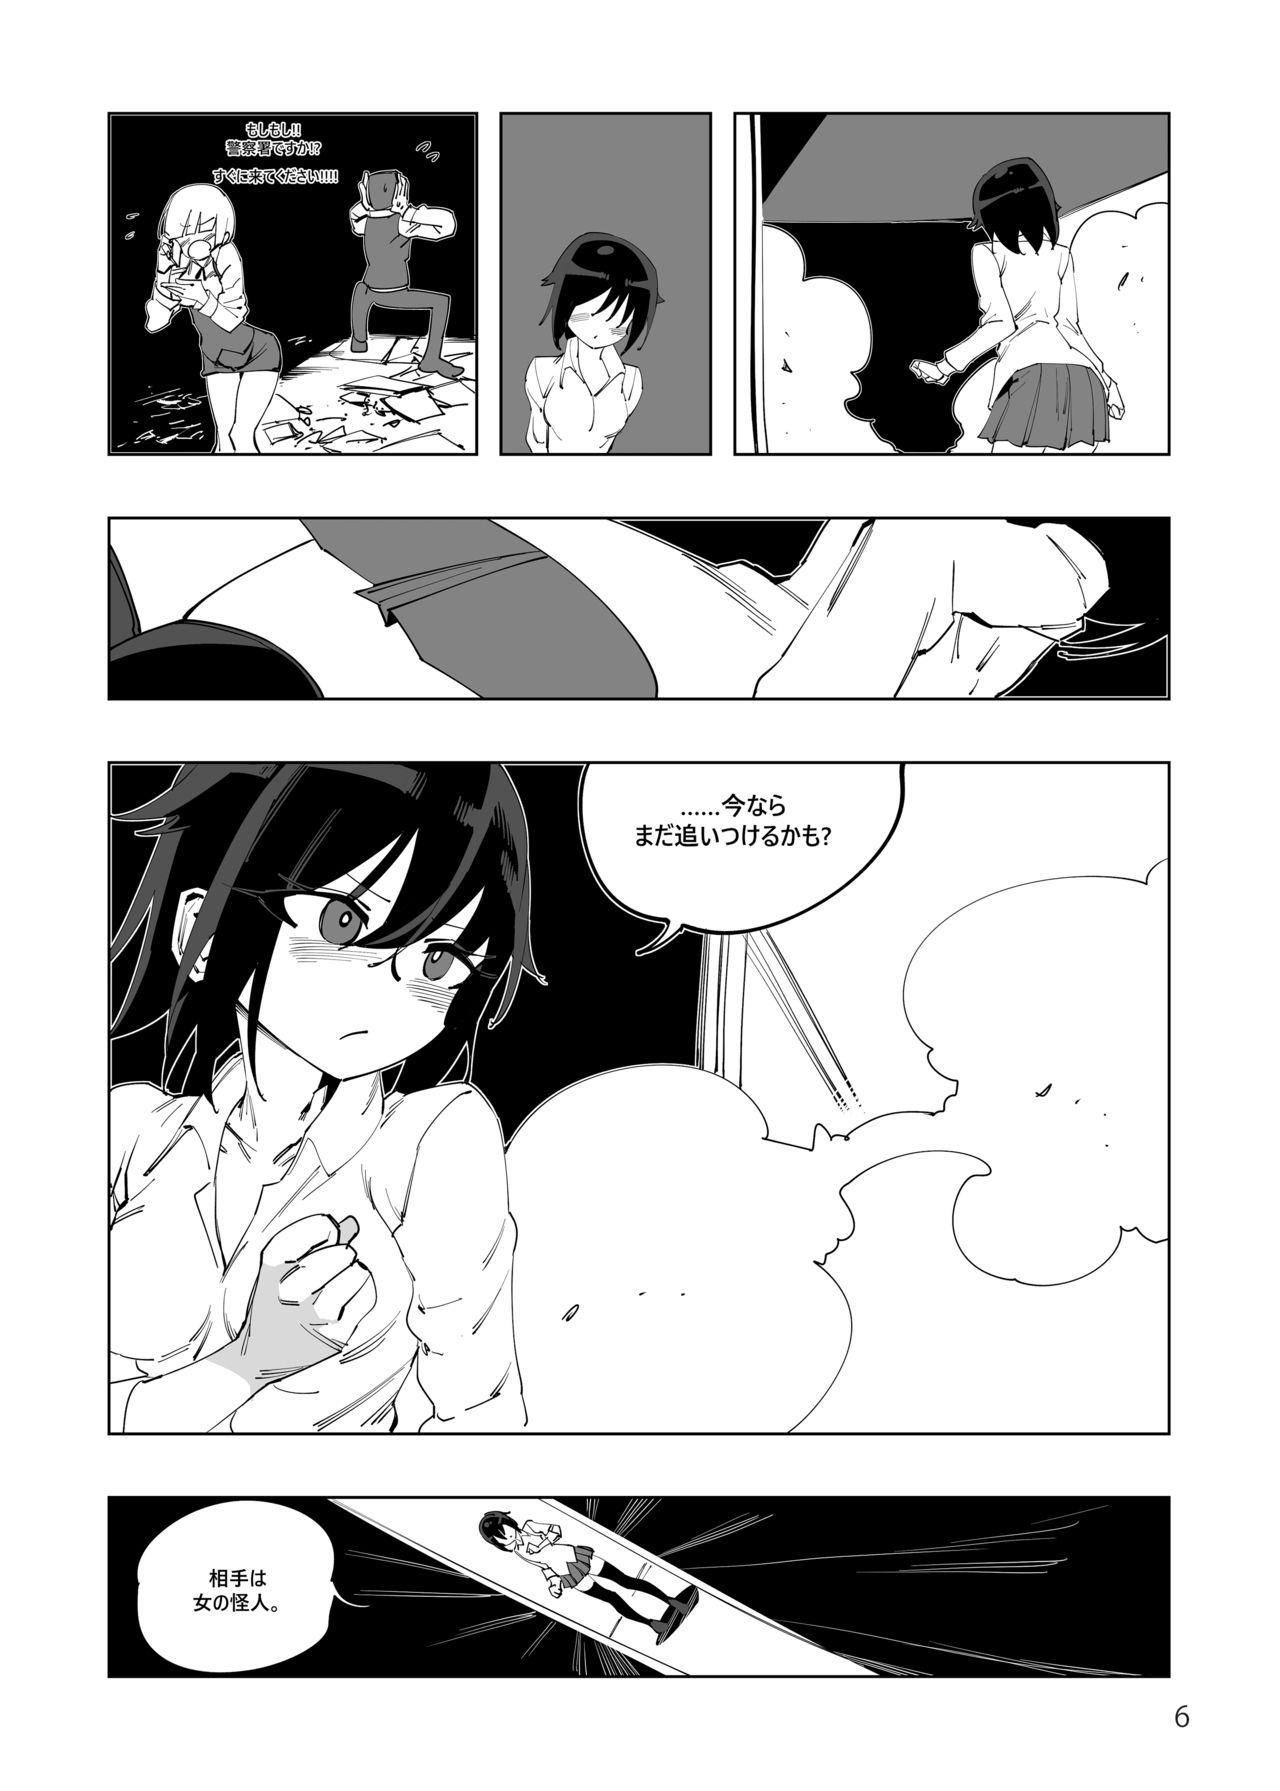 Tittyfuck Mahou Shoujo Western Girls Comic 4-wa Zenpen Shoplifter - Page 7